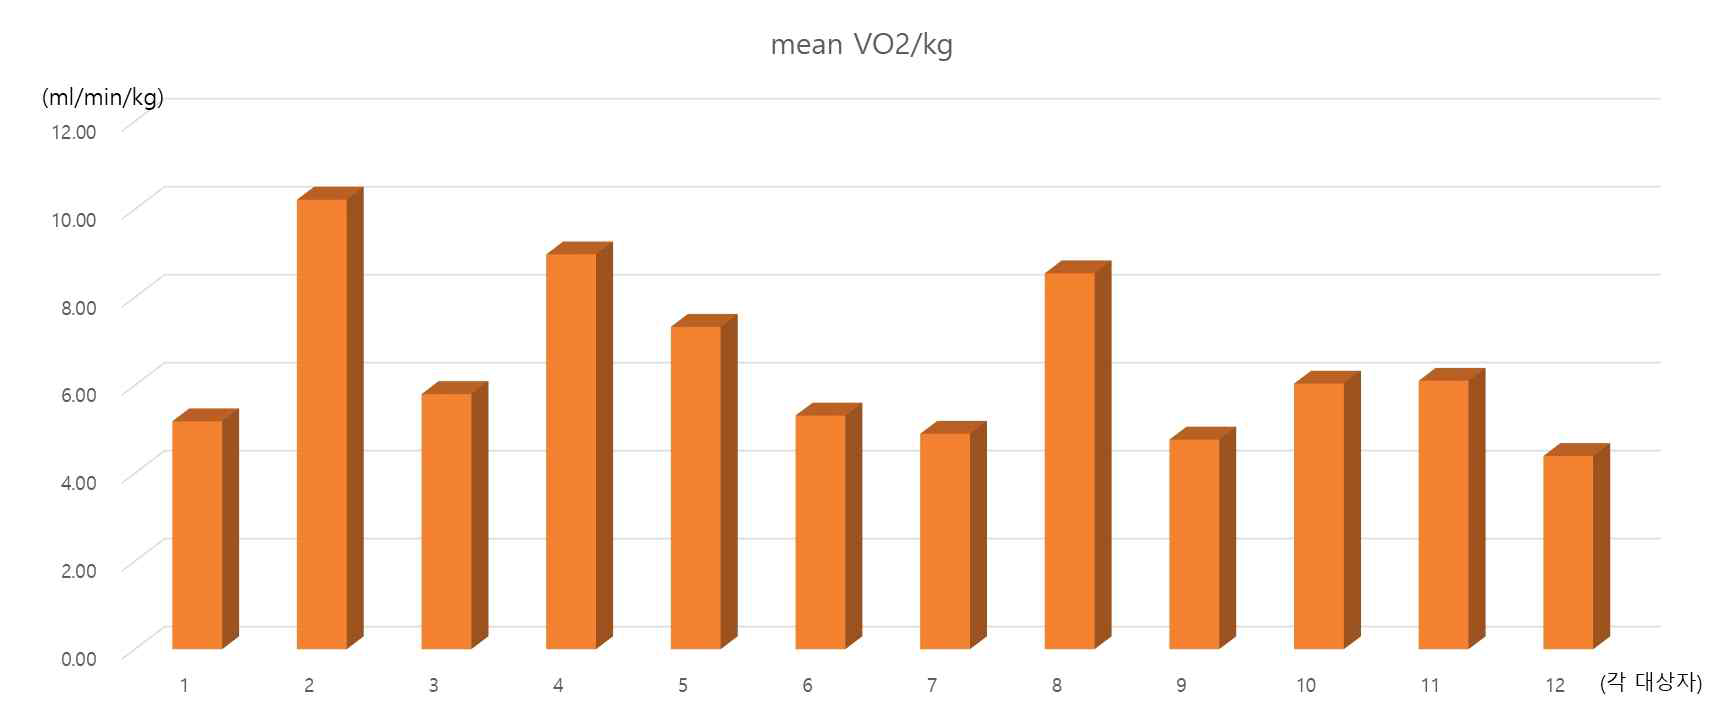 각 대상자 별 평균 VO2/kg 산출